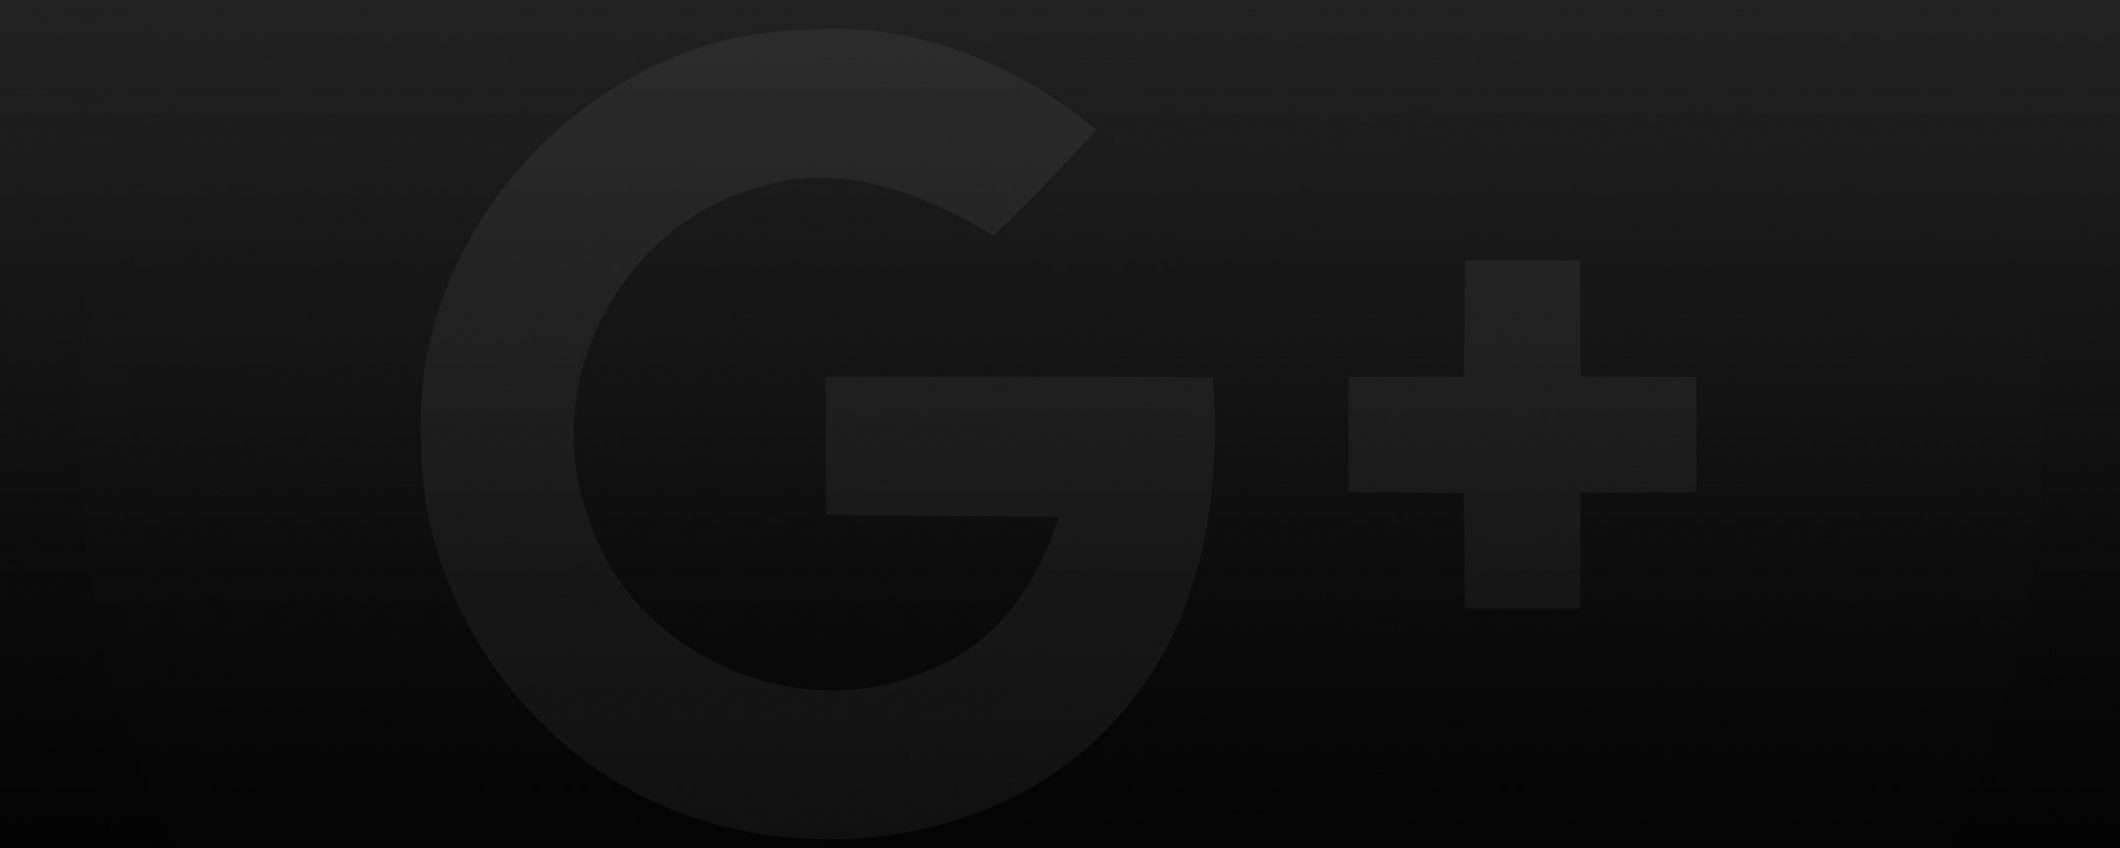 La versione consumer di Google+ chiuderà il 2 aprile